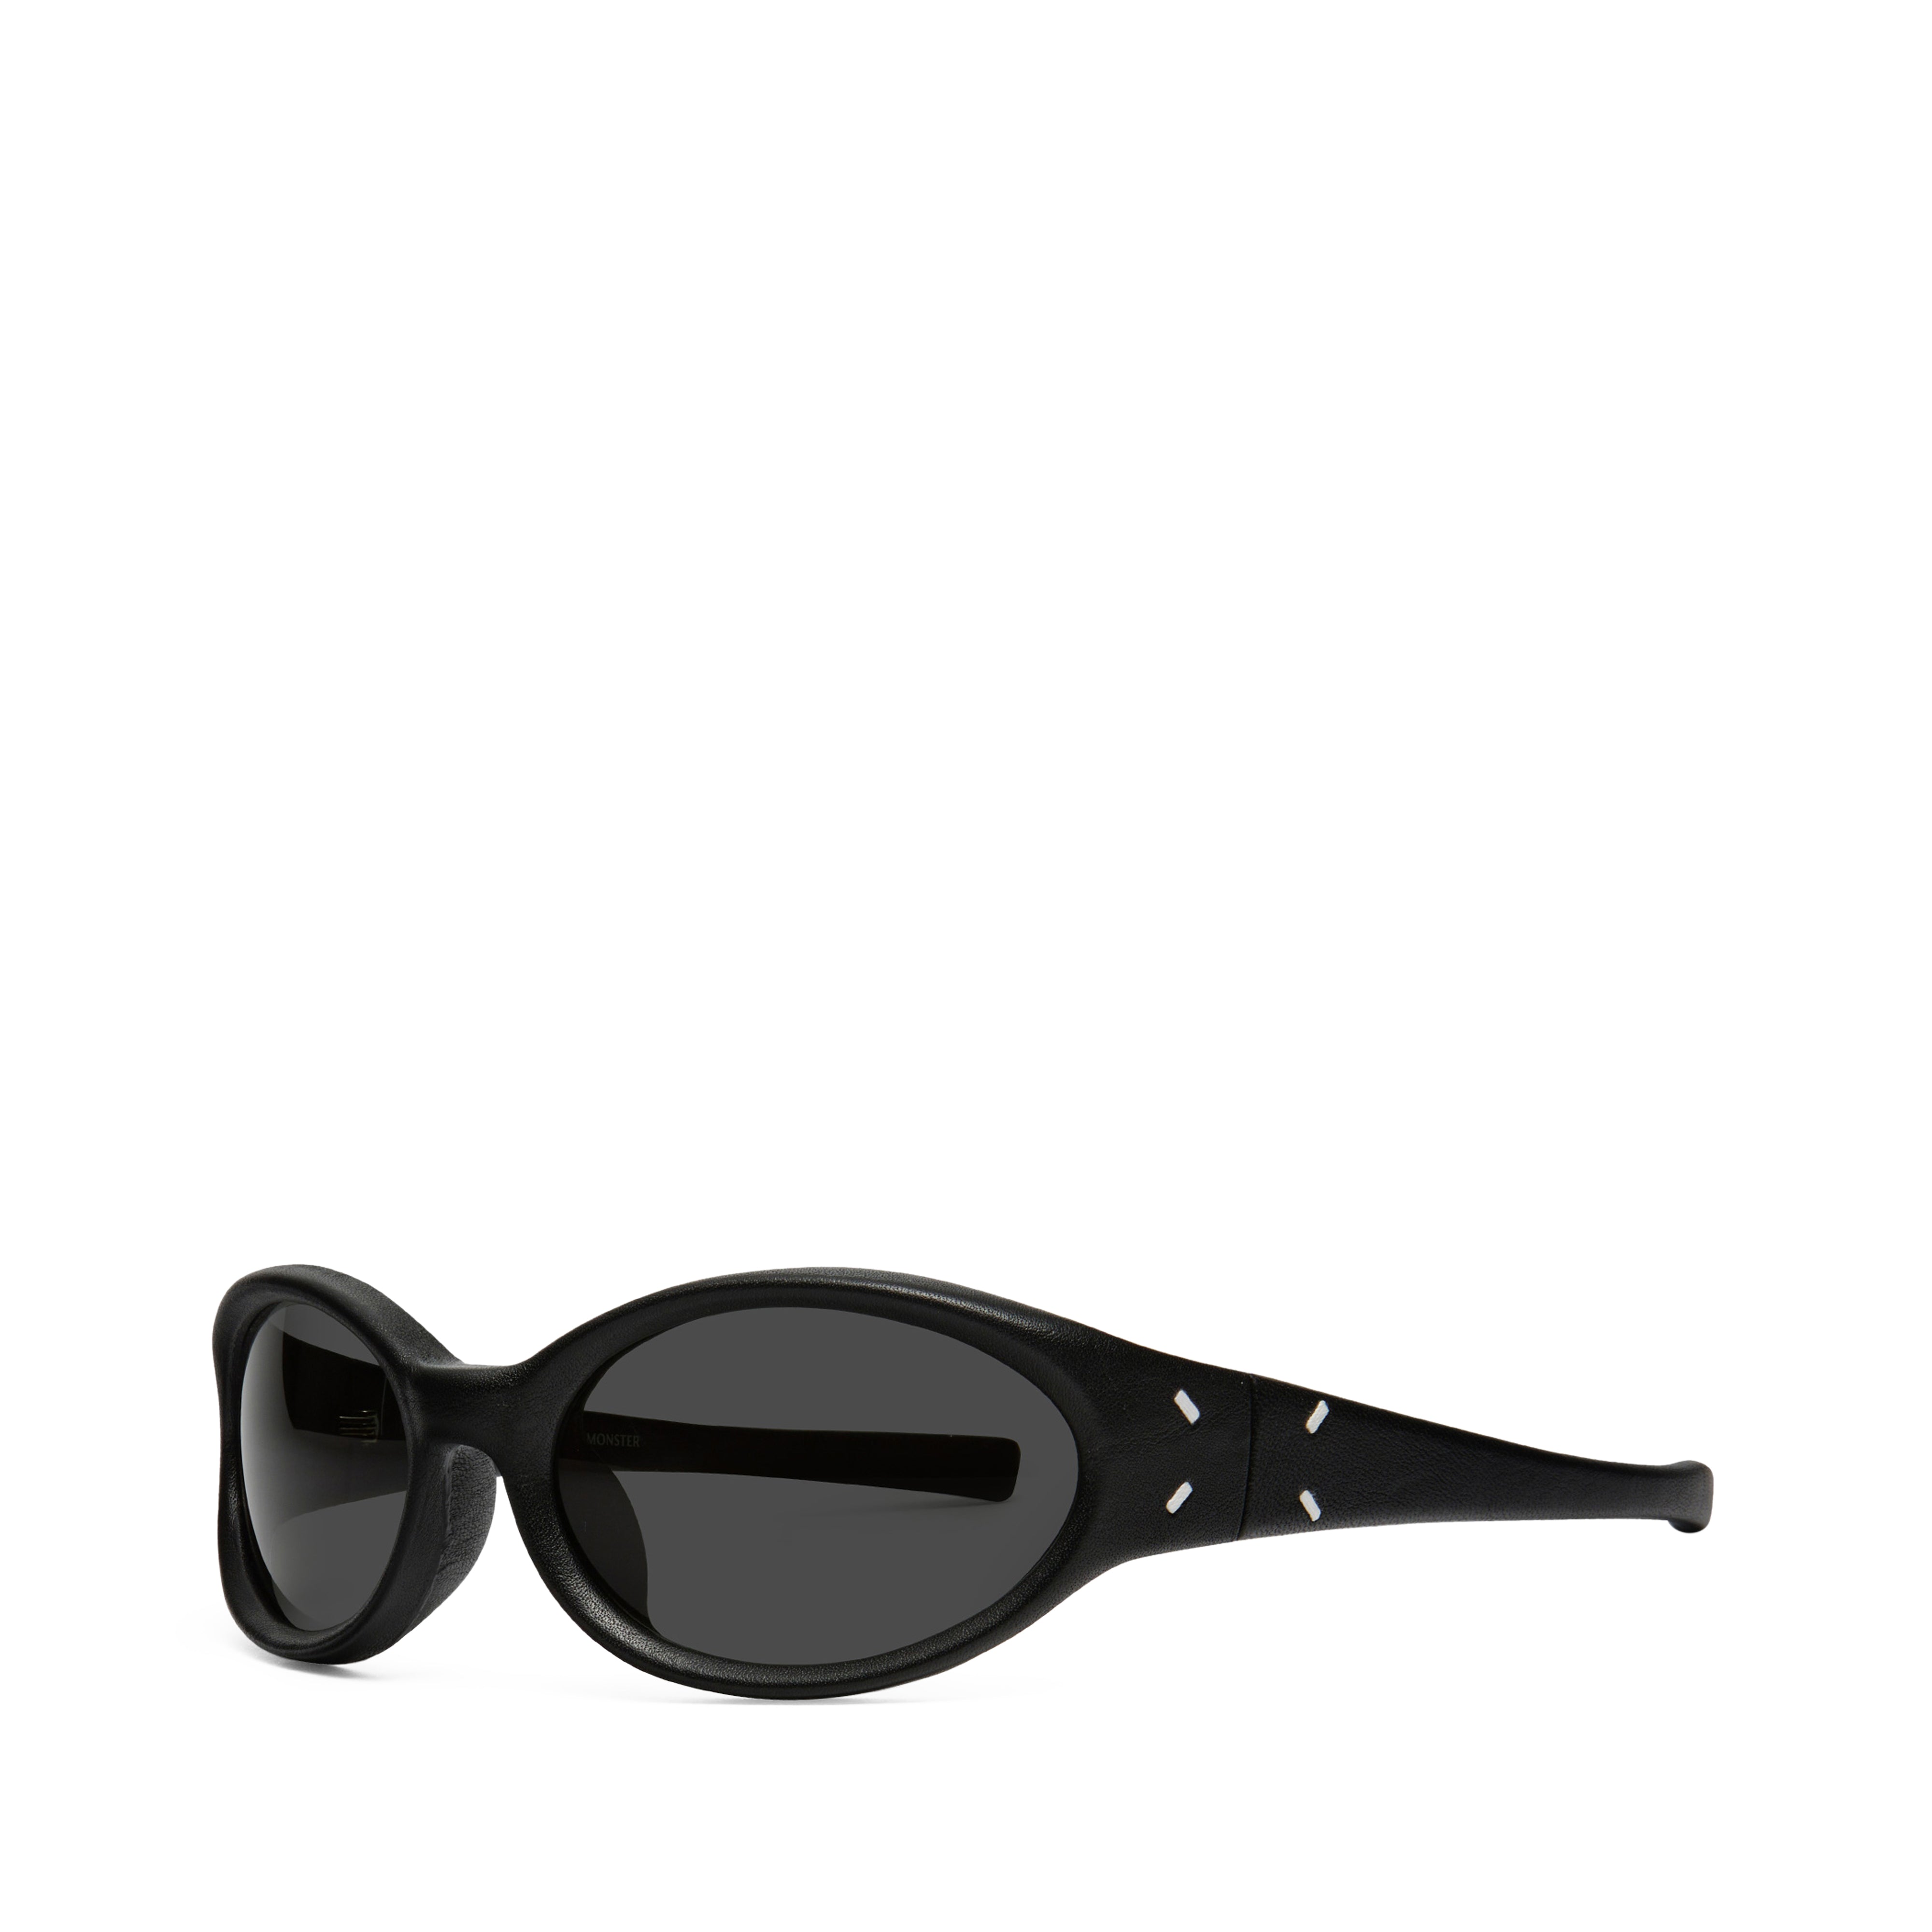 Maison Margiela x Gentle Monster - MM104 Leather L01 Sunglasses - (Black)